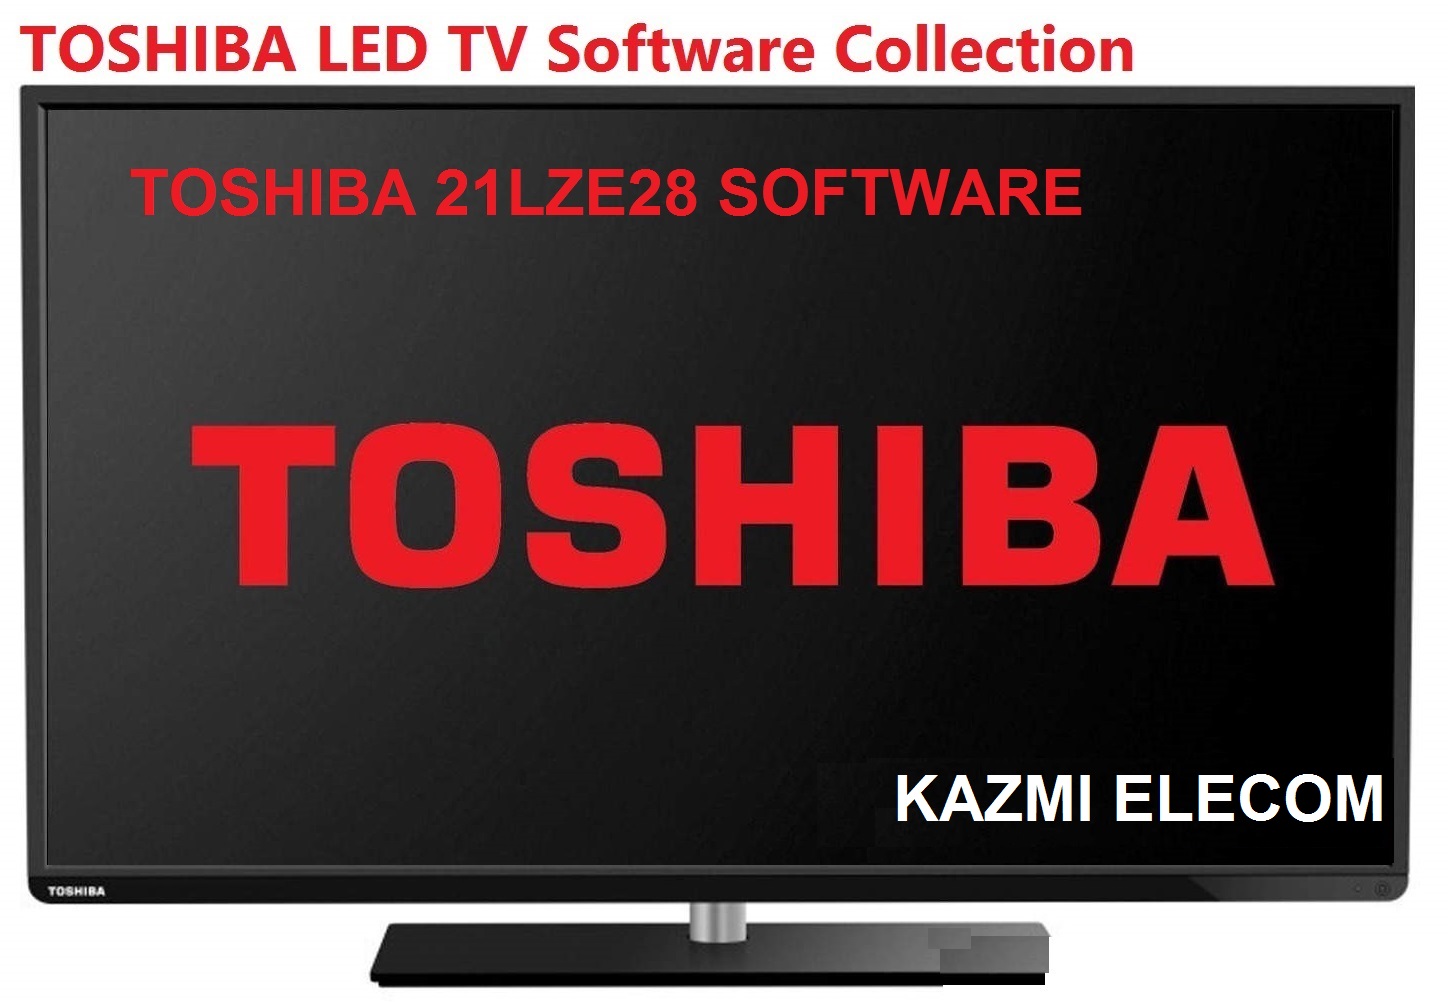 Toshiba 21Lze28